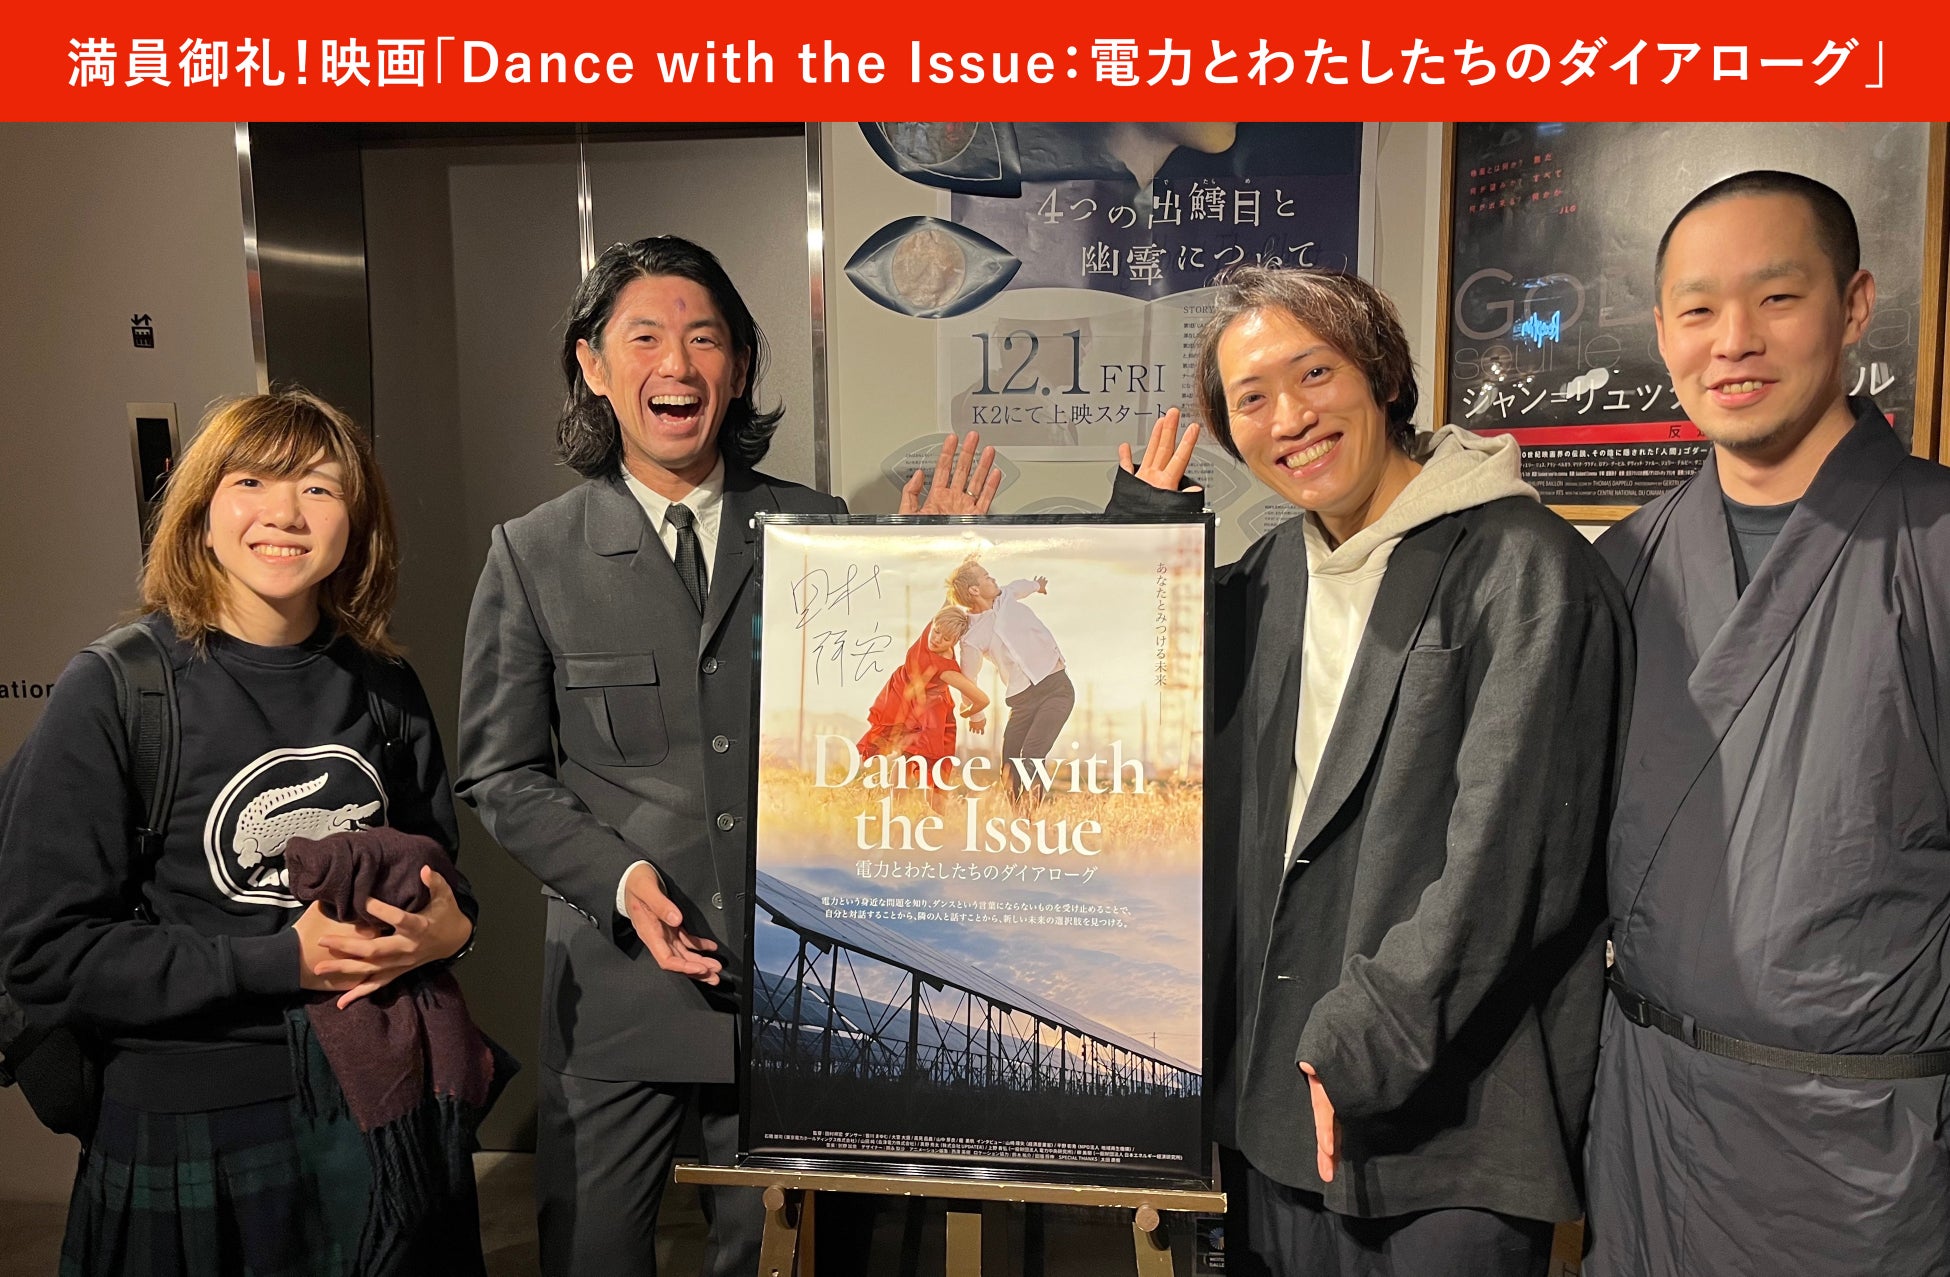 エネルギー課題をドキュメンタリーとダンスで伝える新作映画『Dance with the Issue』、満席続出の大盛況のうちに下北沢K2での上映が終了！